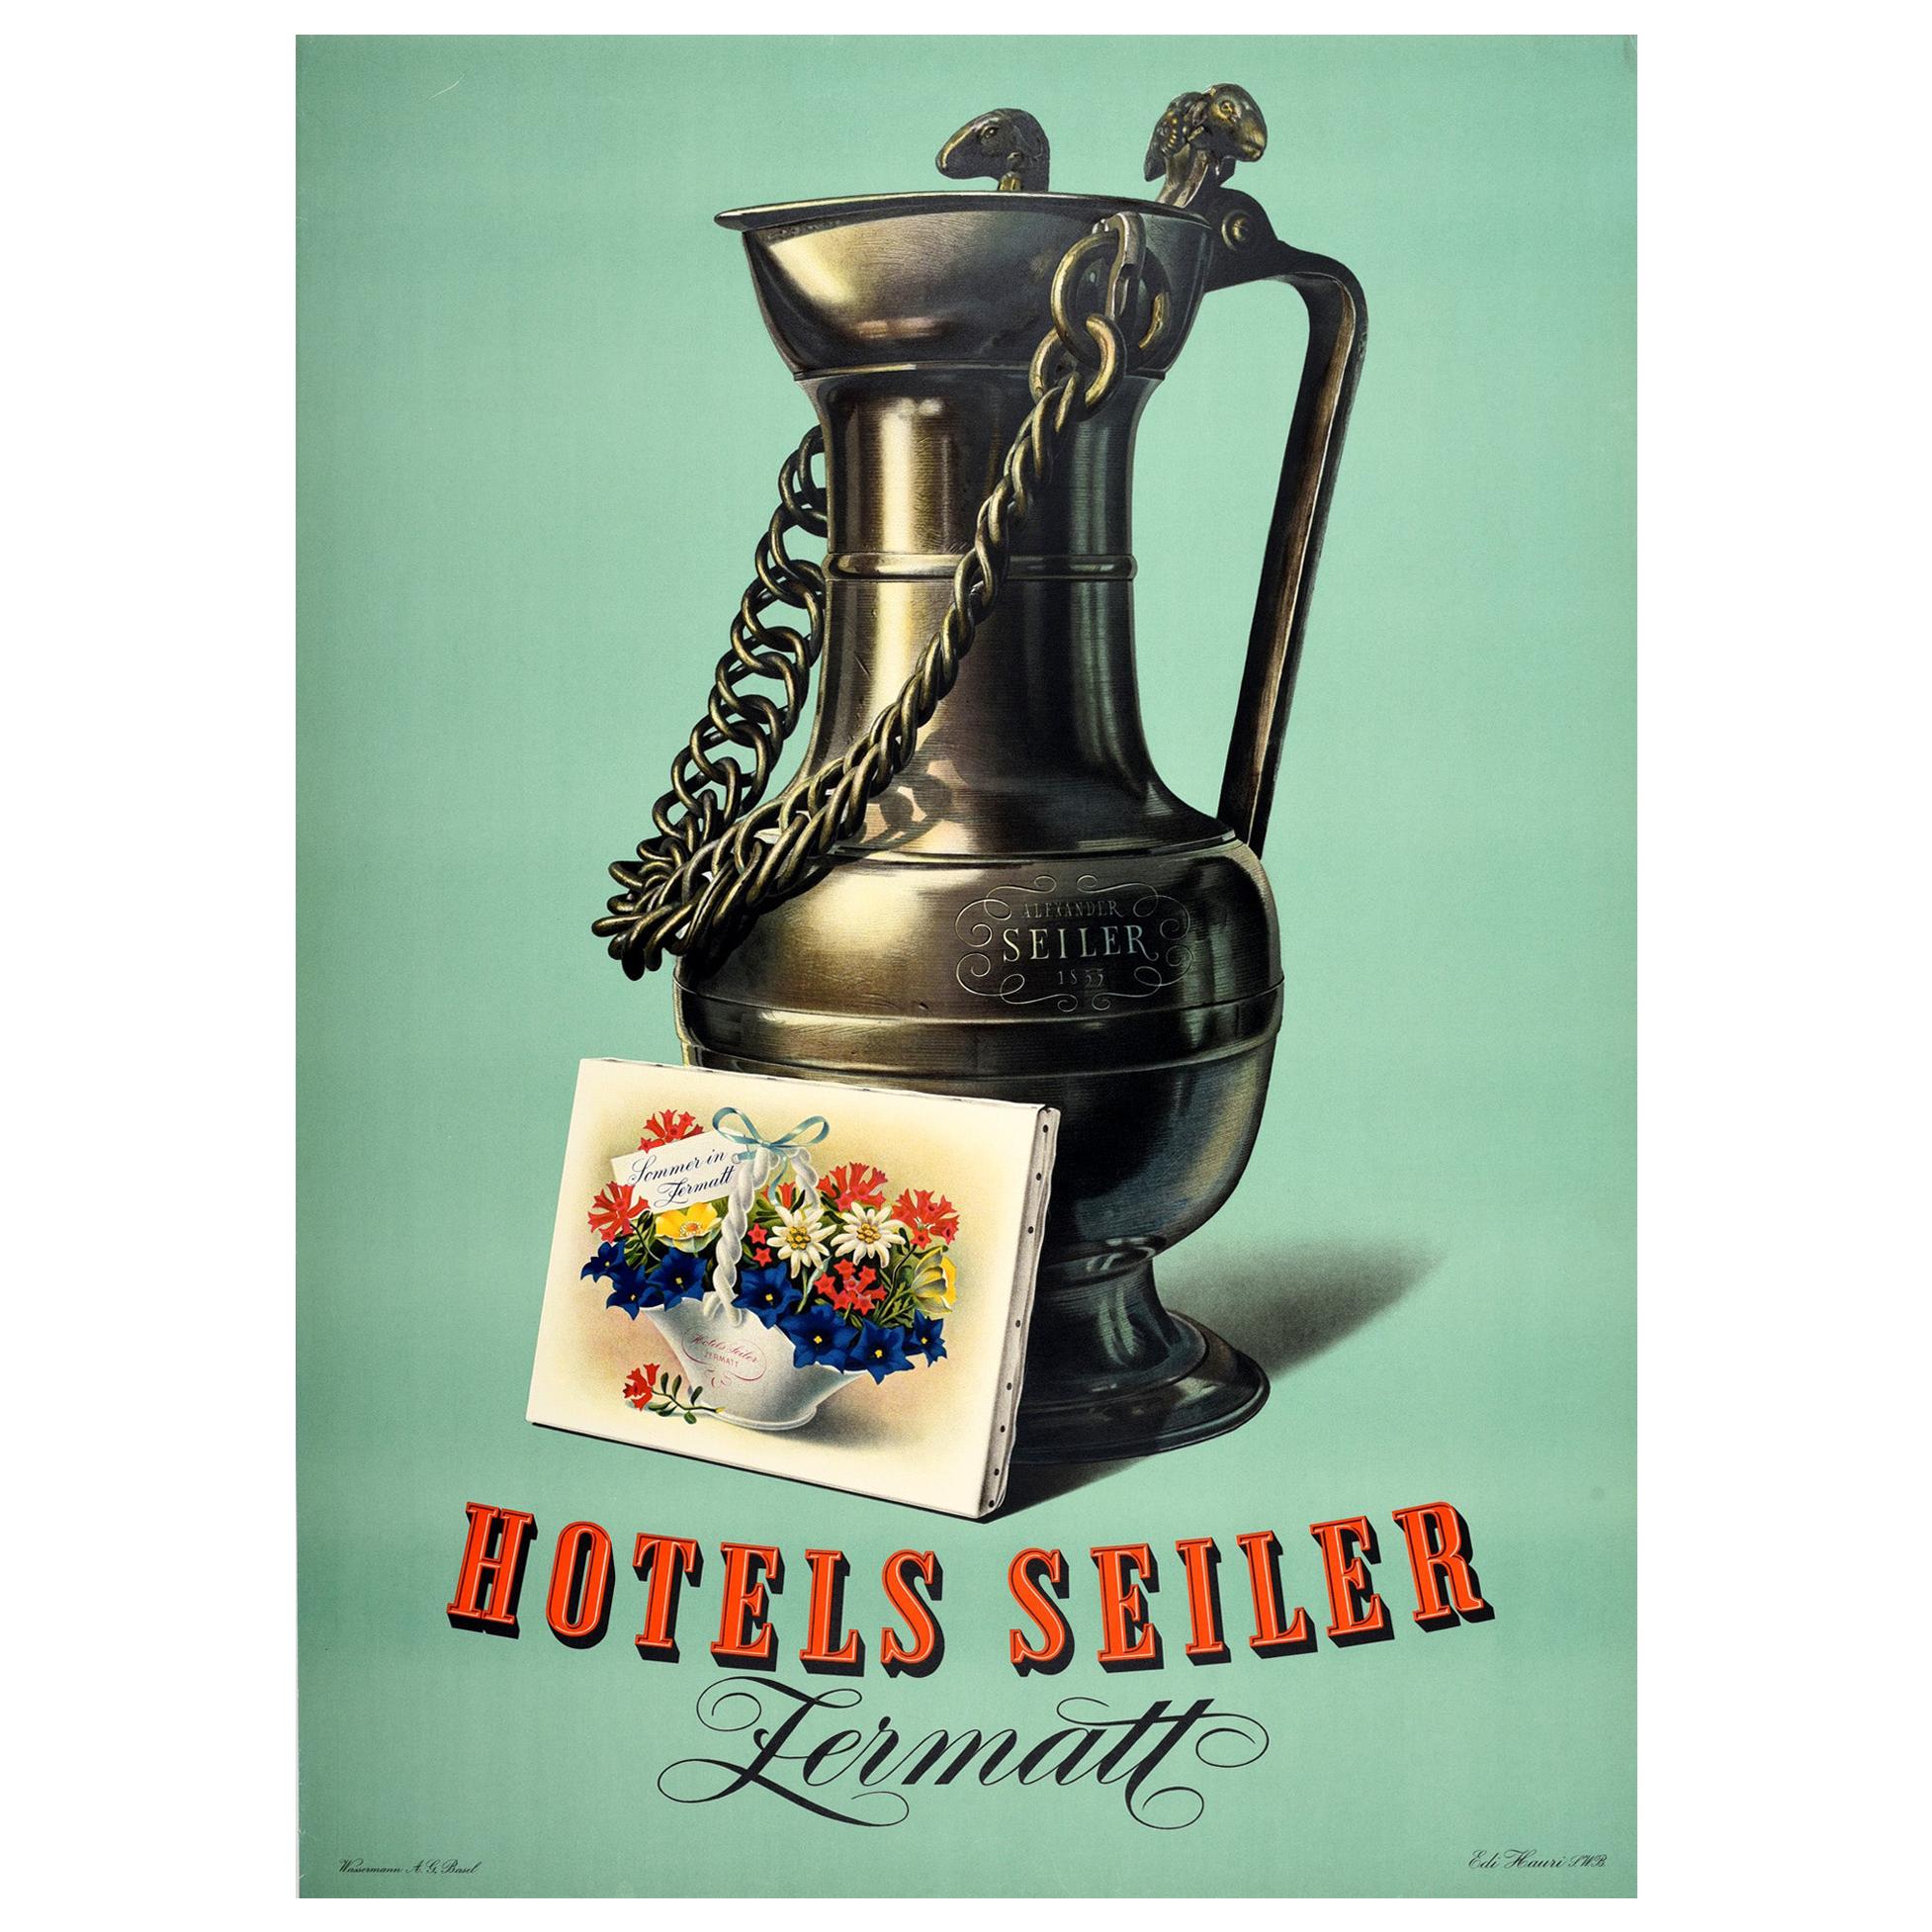 Vintage-Poster "Hotels Seiler Zermatt", Schweiz, Alpen, Sommerblumen, Vintage